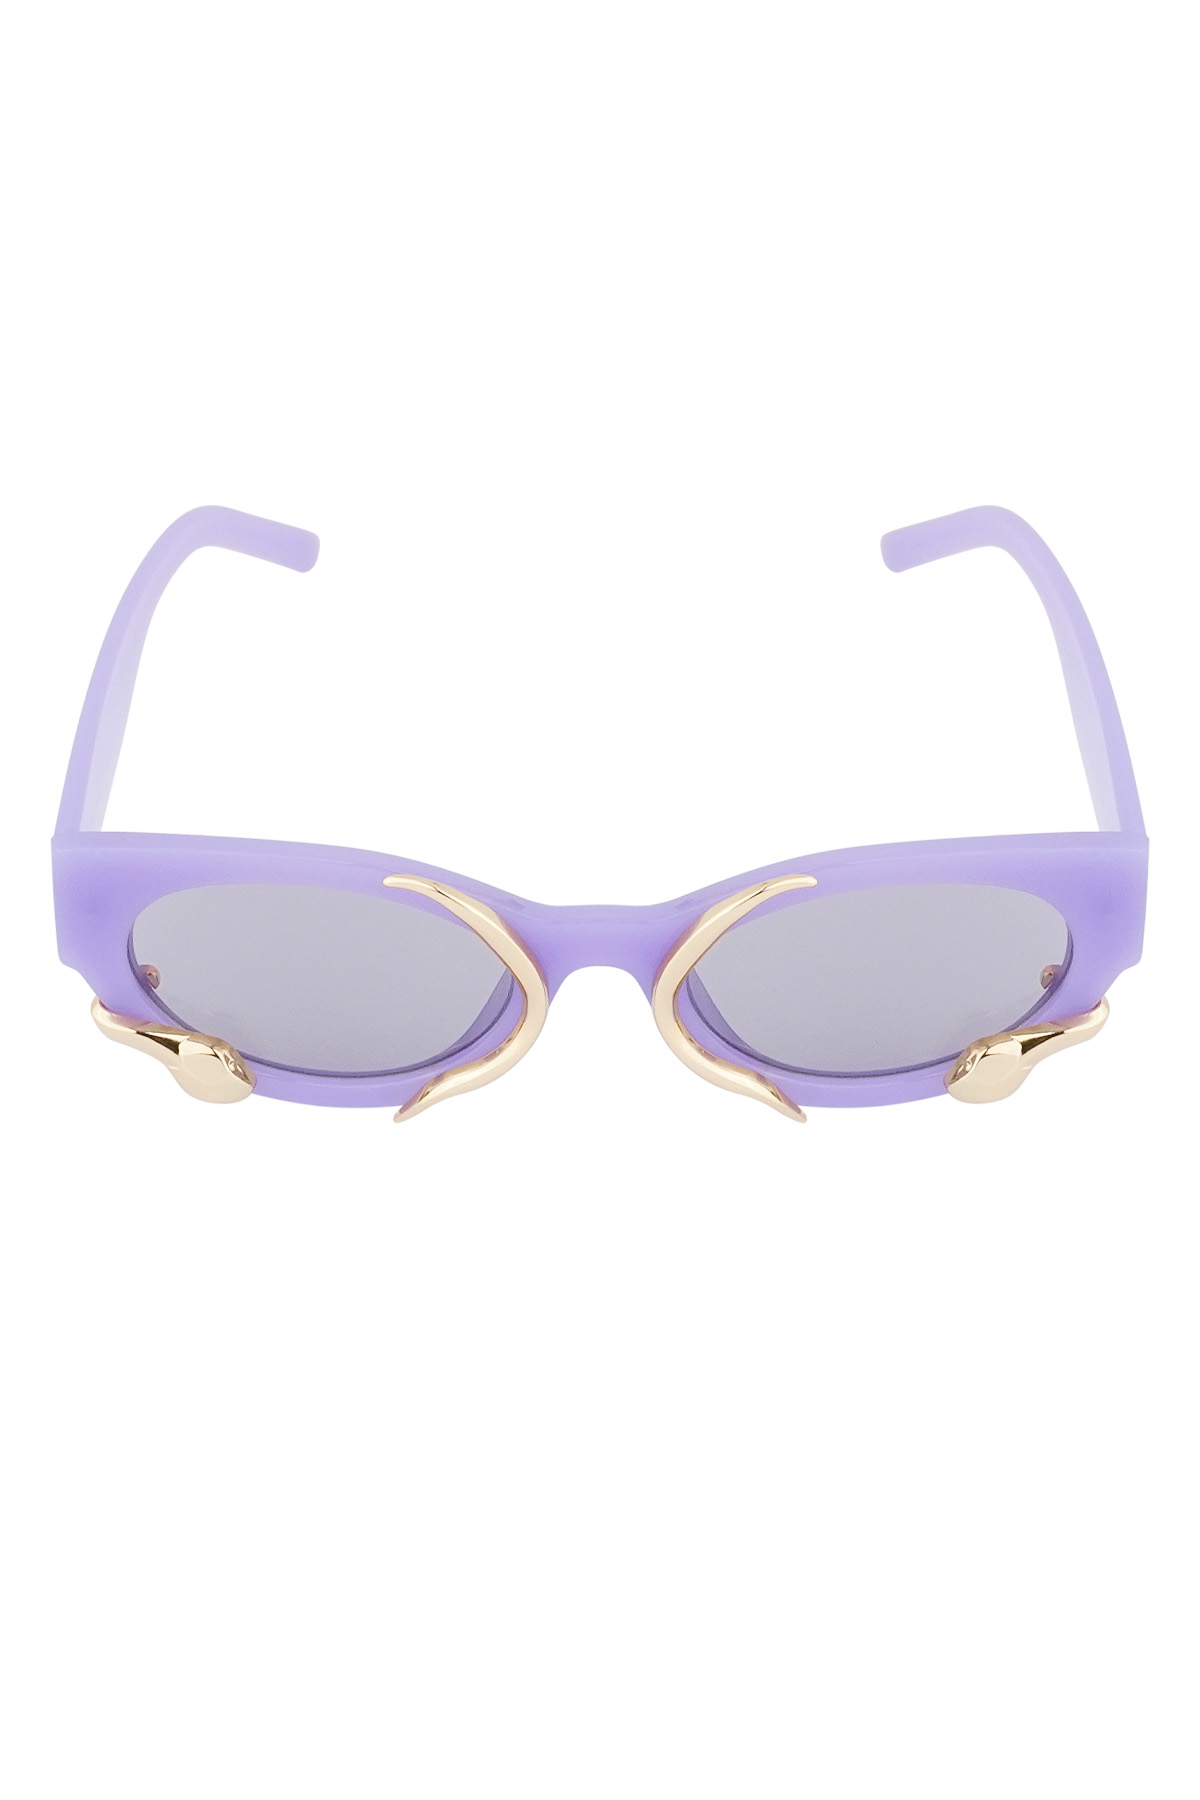 Gafas de sol con forma de serpiente - violeta h5 Imagen5